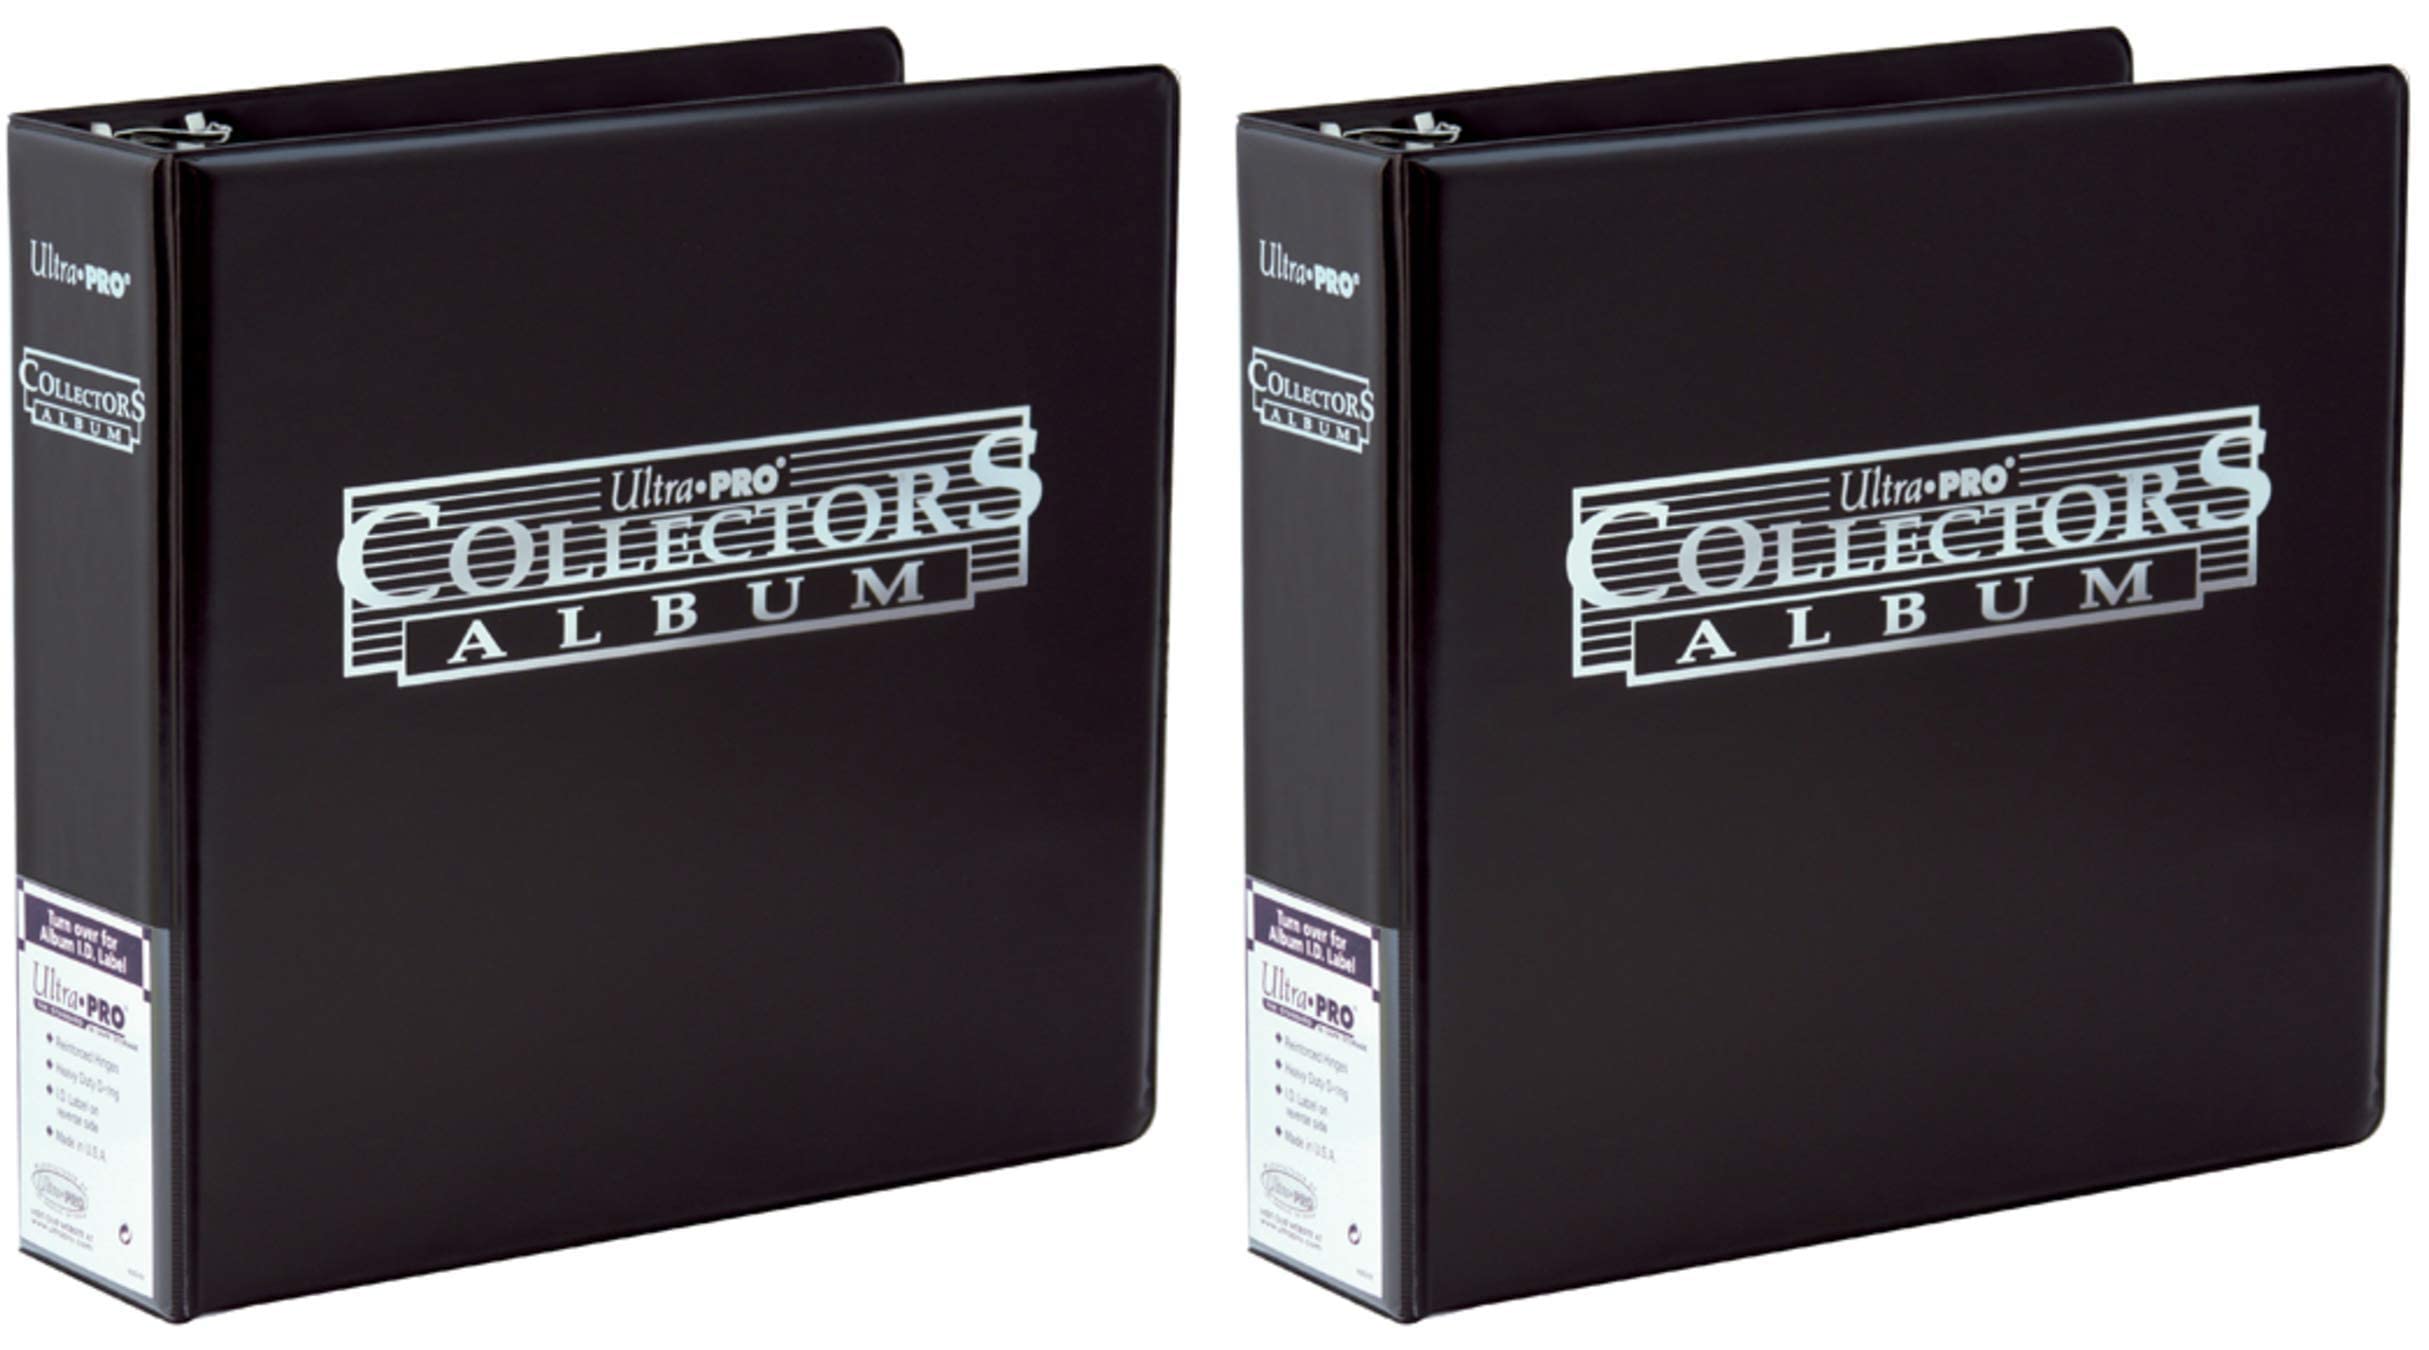 Collector’s album